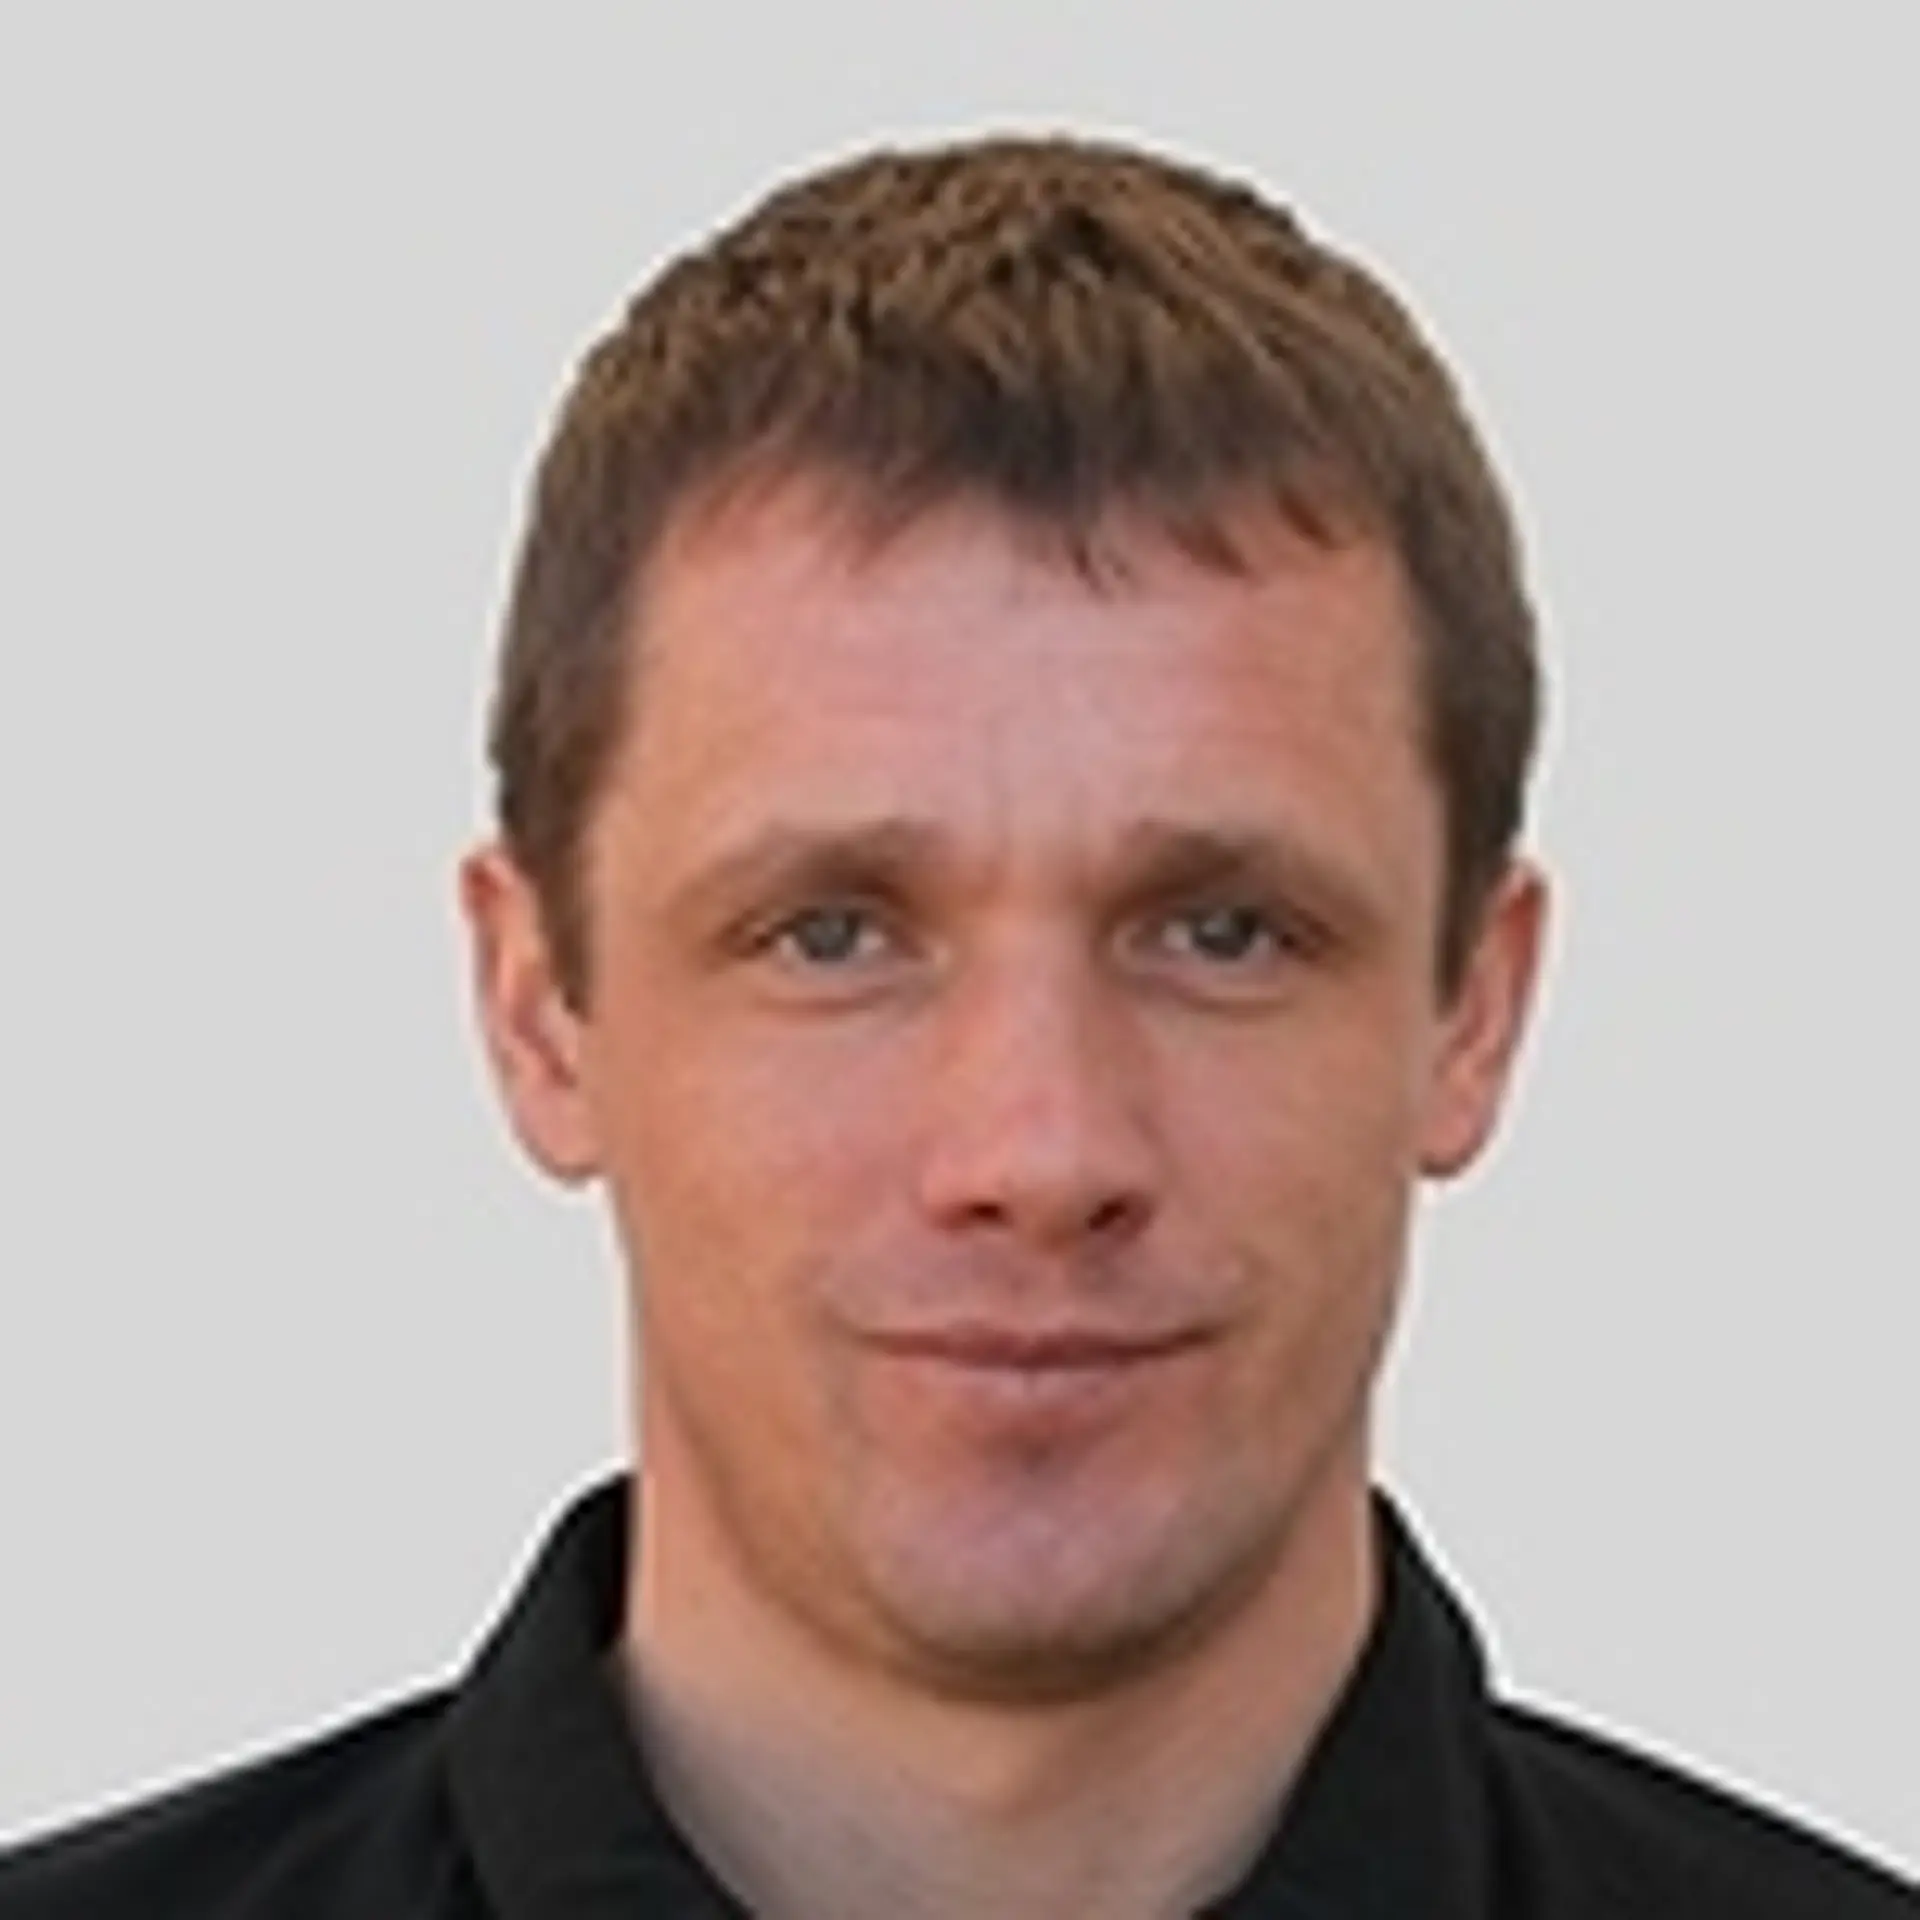 Viktor Goncharenko